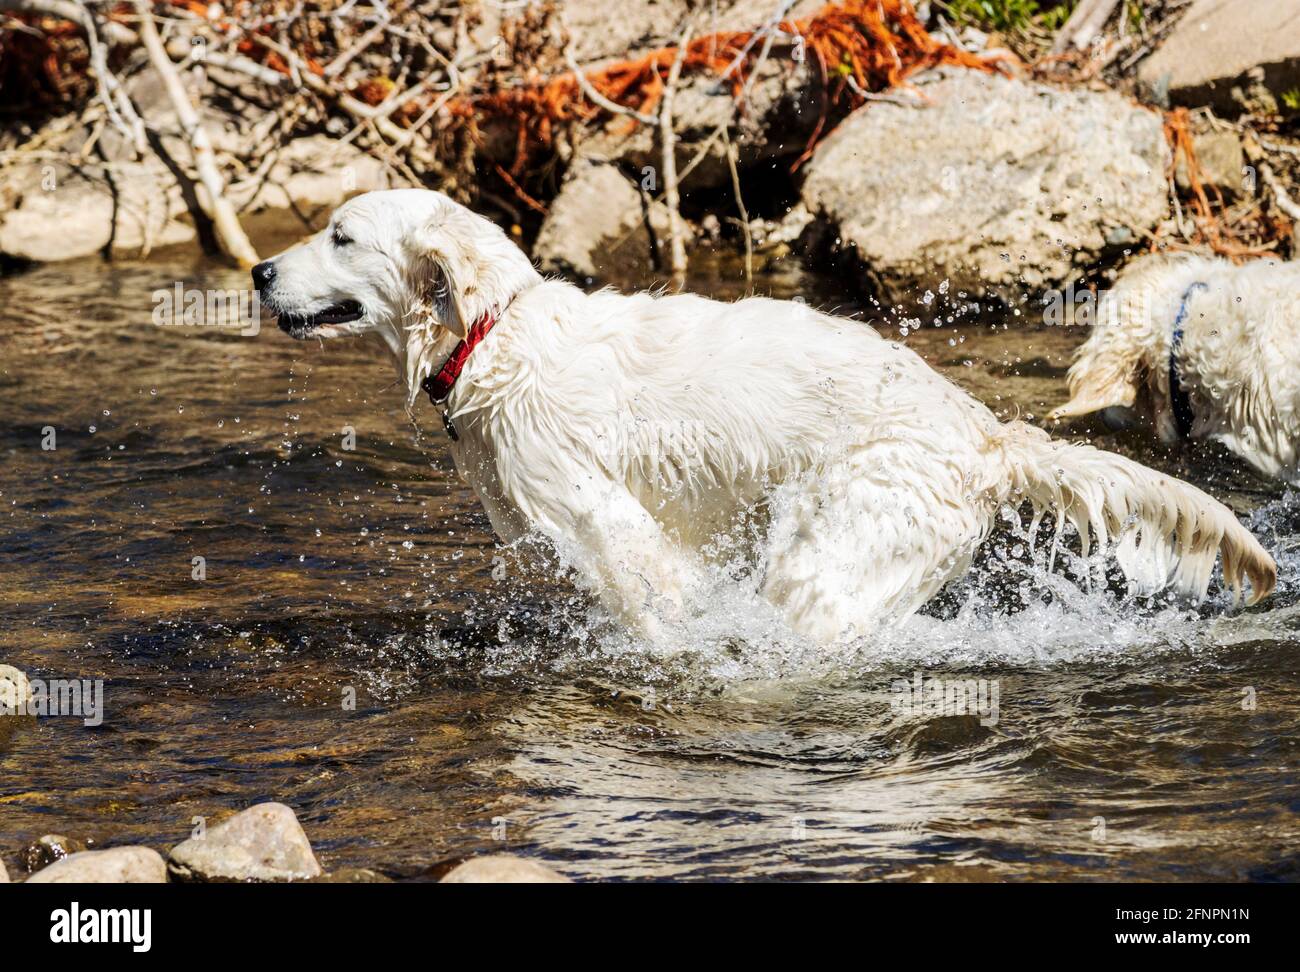 Erwachsener platinfarbener Golden Retriever Hund & sechs Monate alter Welpe, der im South Arkansas River, Salida, Colorado, USA spielt Stockfoto